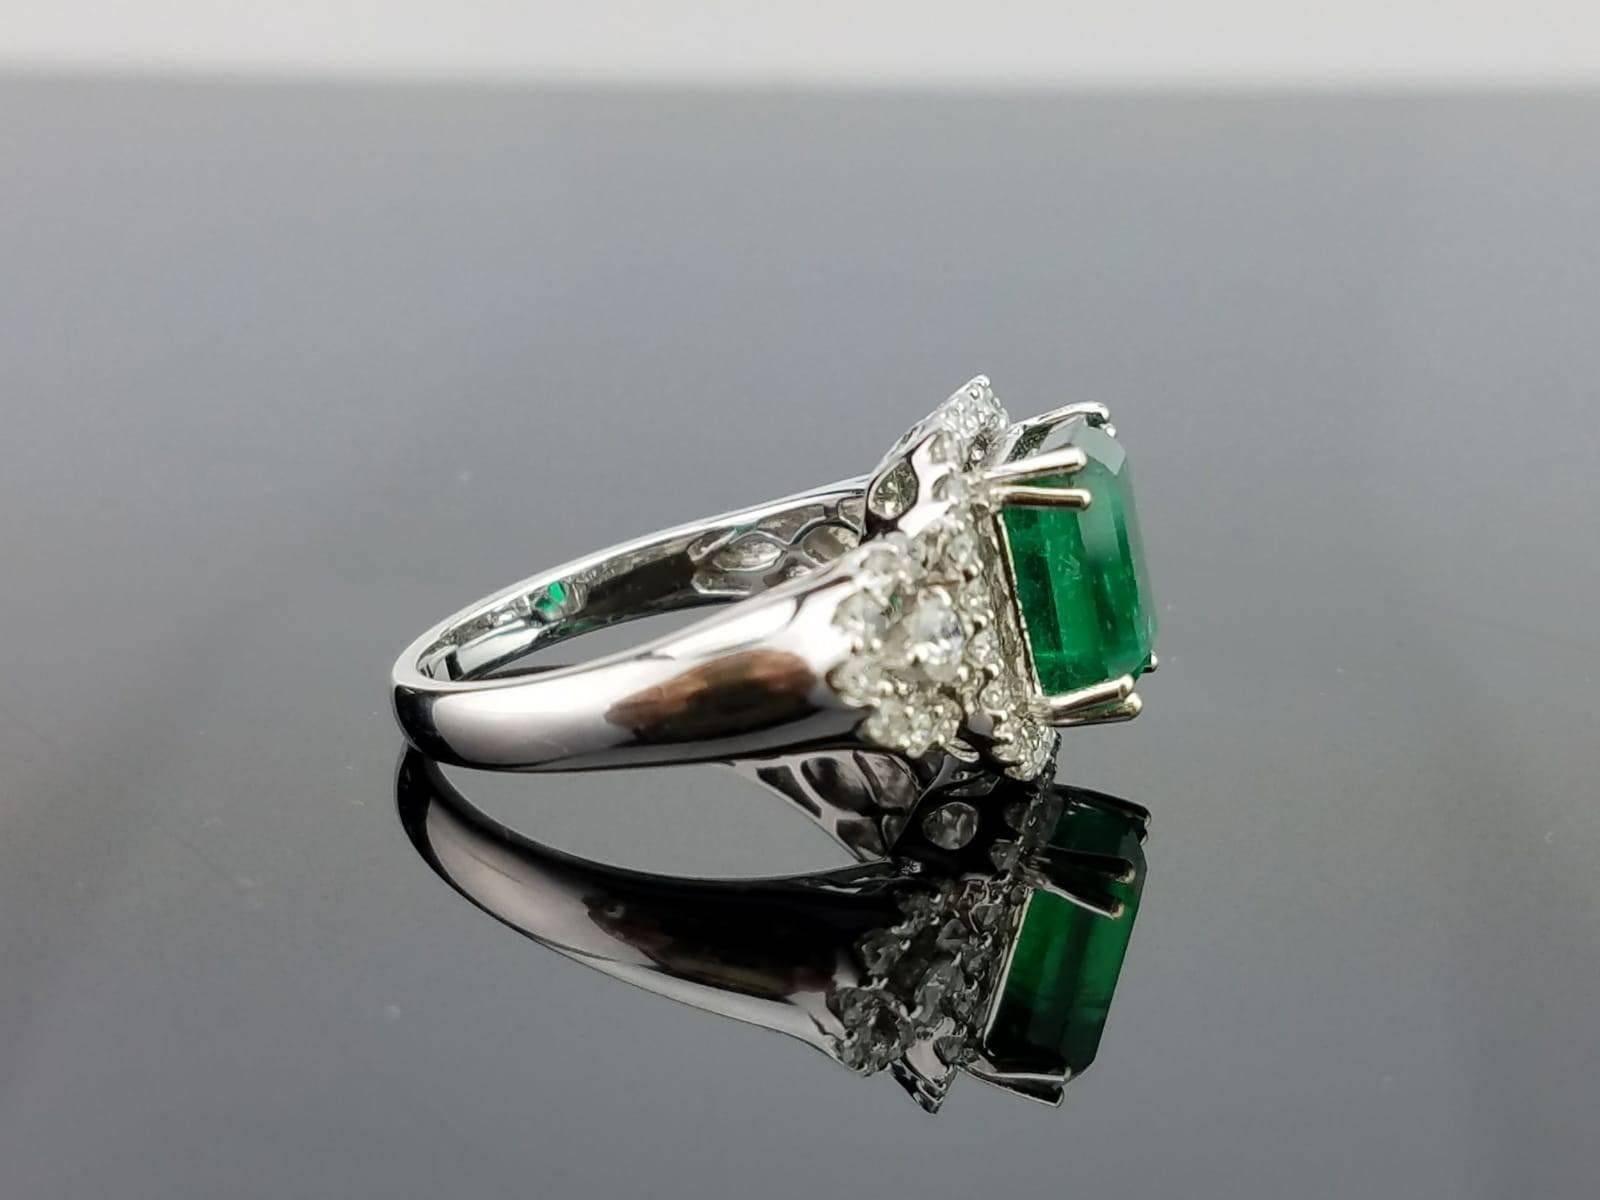 236 carat emerald